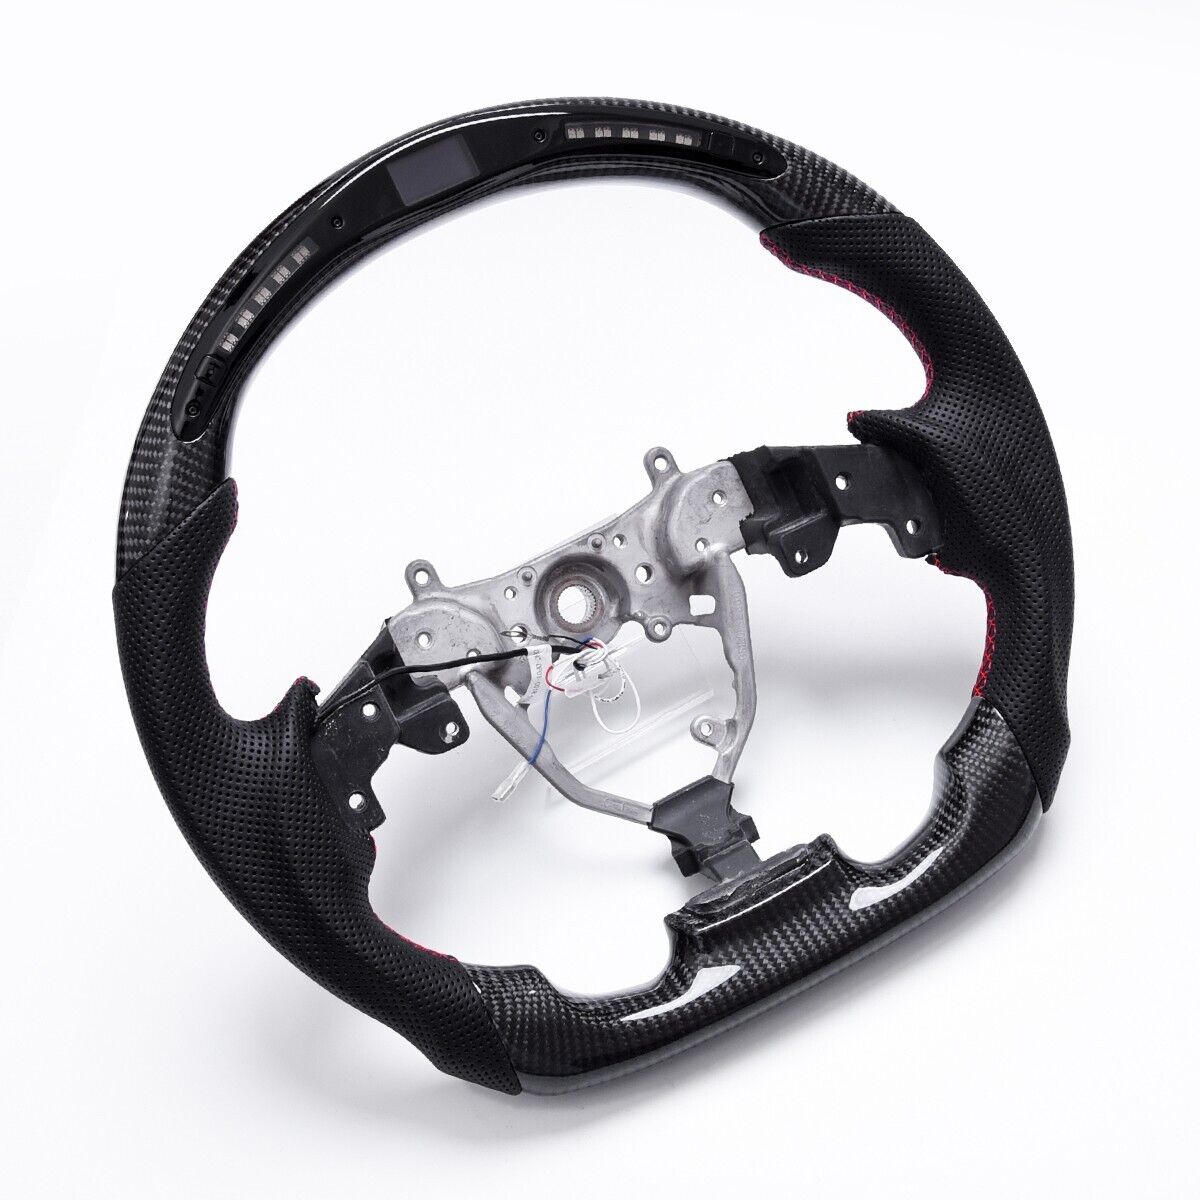 Revolve OEM Carbon Fiber LED Steering Wheel Lexus IS 250/350 2006-2012 - revolvesteering